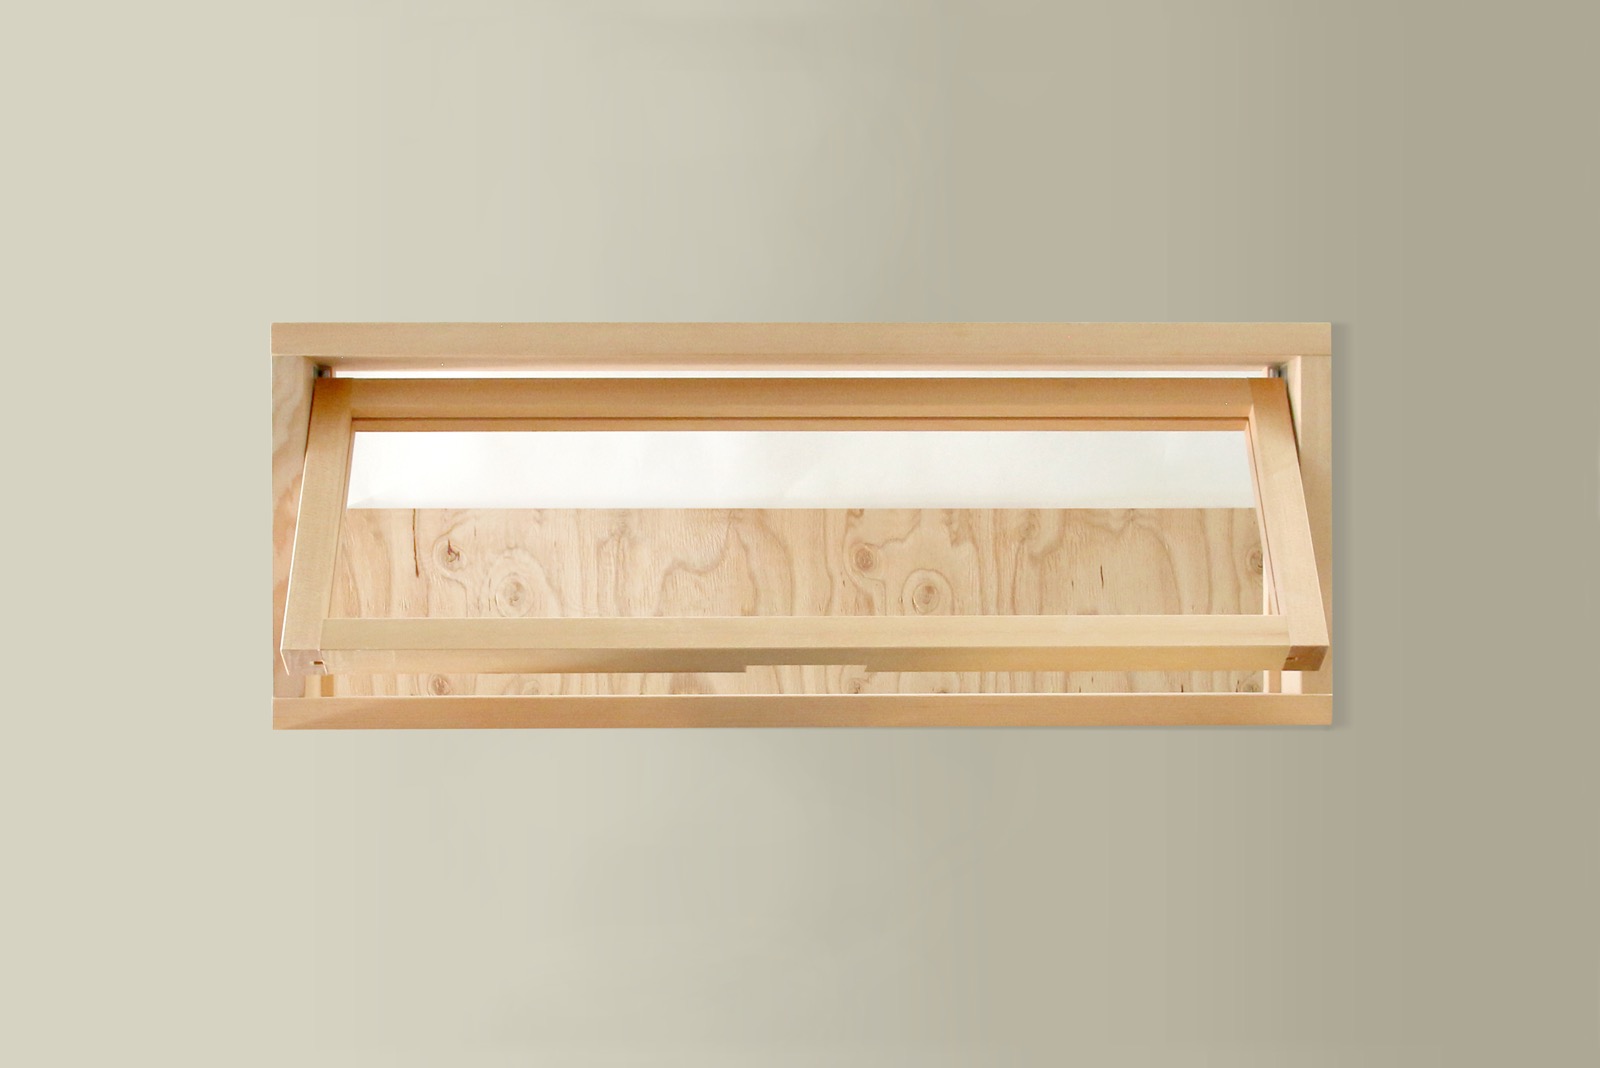 木製室内窓 横長1連 押し出しタイプ DW-DR008-03-G164 窓は約40度の角度まで開けることができます